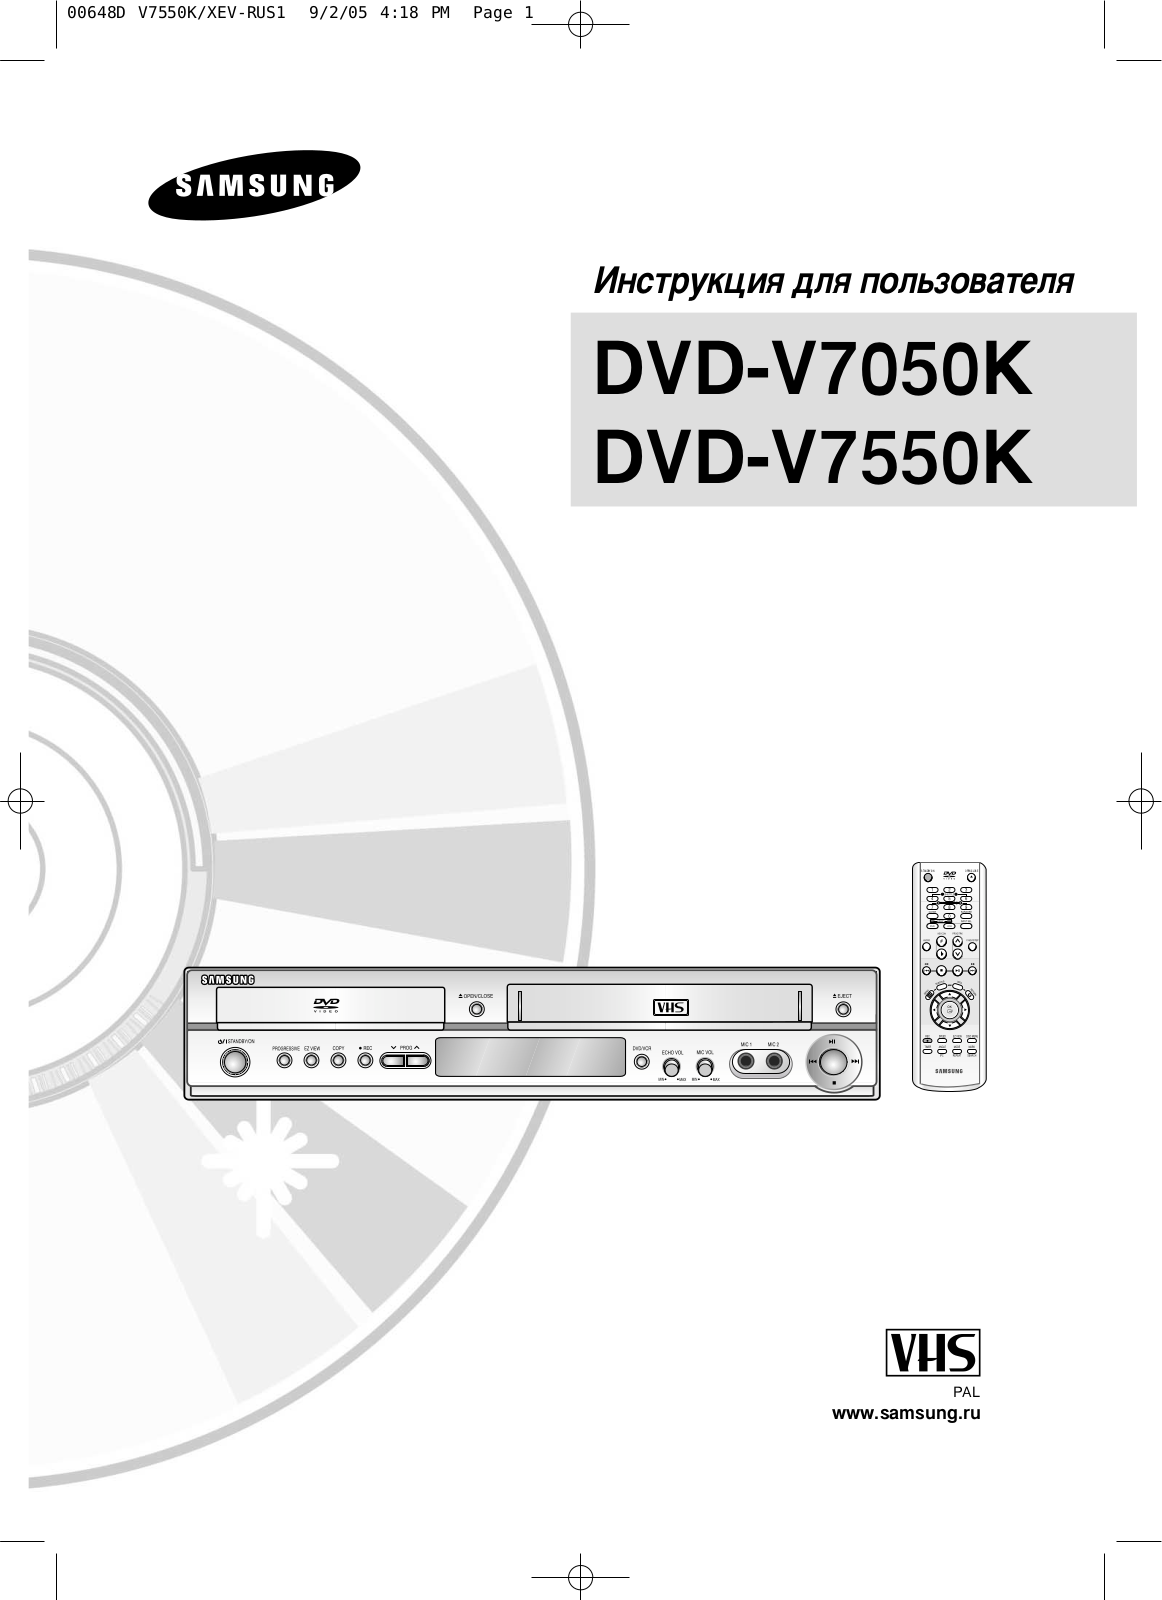 Samsung DVD-V7550K User Manual